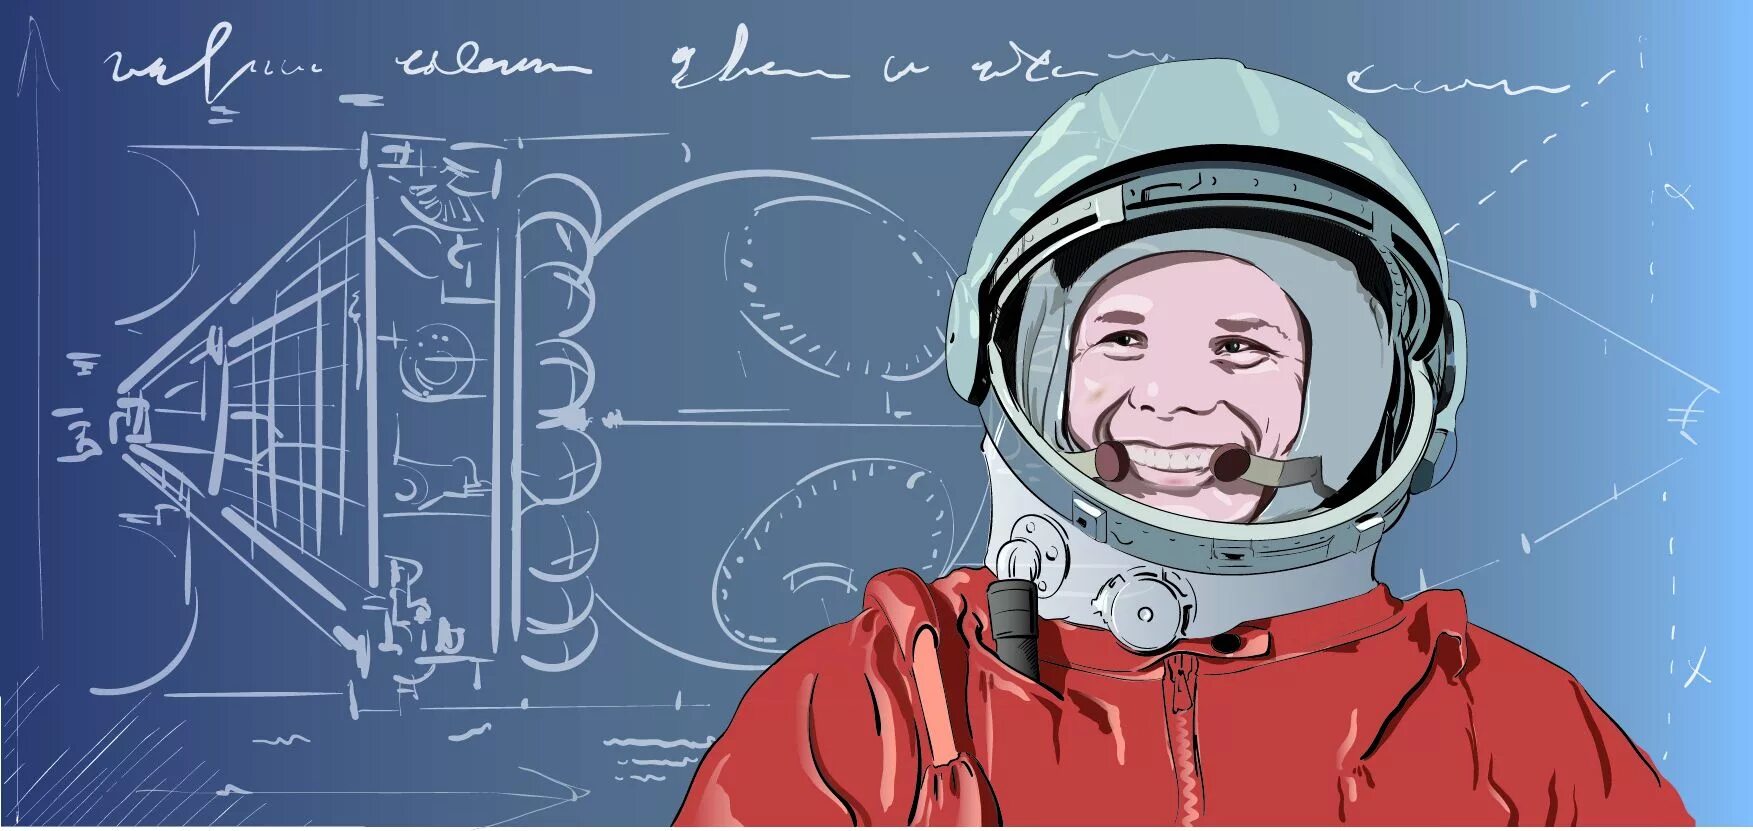 Посвященный первому полету человека в космос. Гагарин 60 лет полета в космос. День Космонавта. 60 Летие полета Гагарина в космос. 12 Апреля день космонавтики.